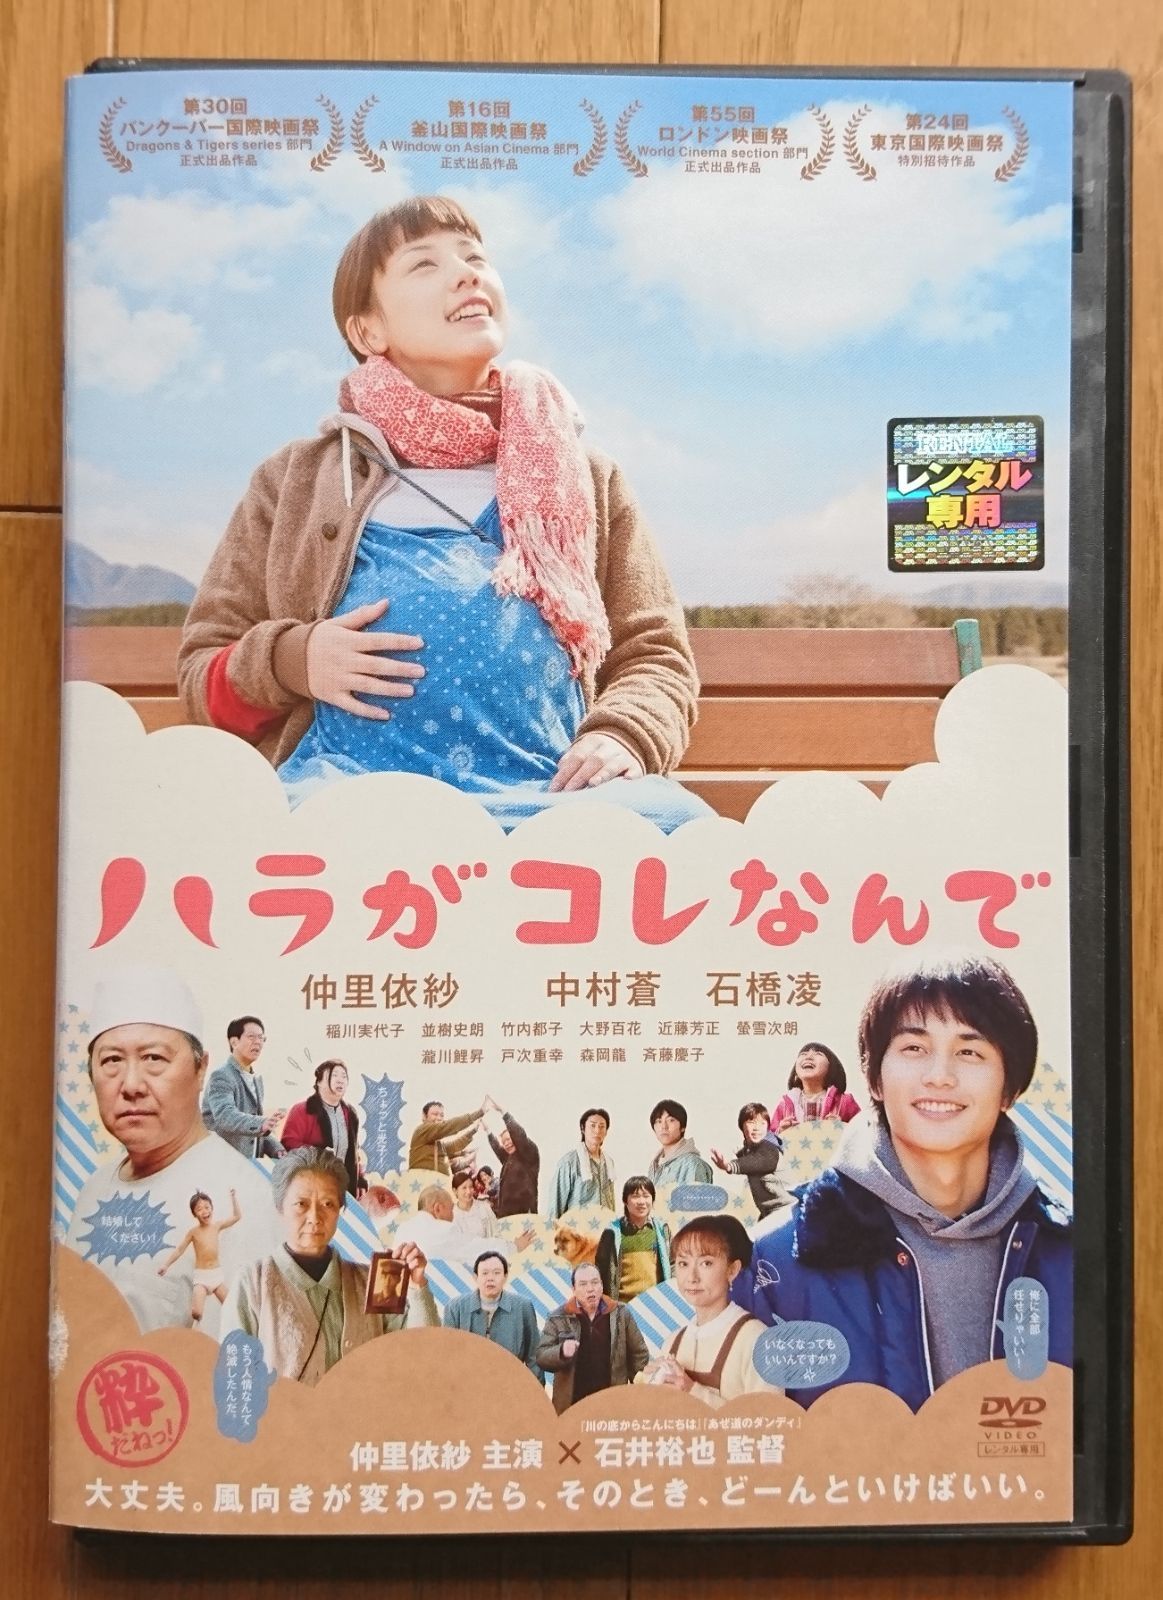 石井 裕也 監督、仲 里依紗 主演「ハラがコレなんで」DVD